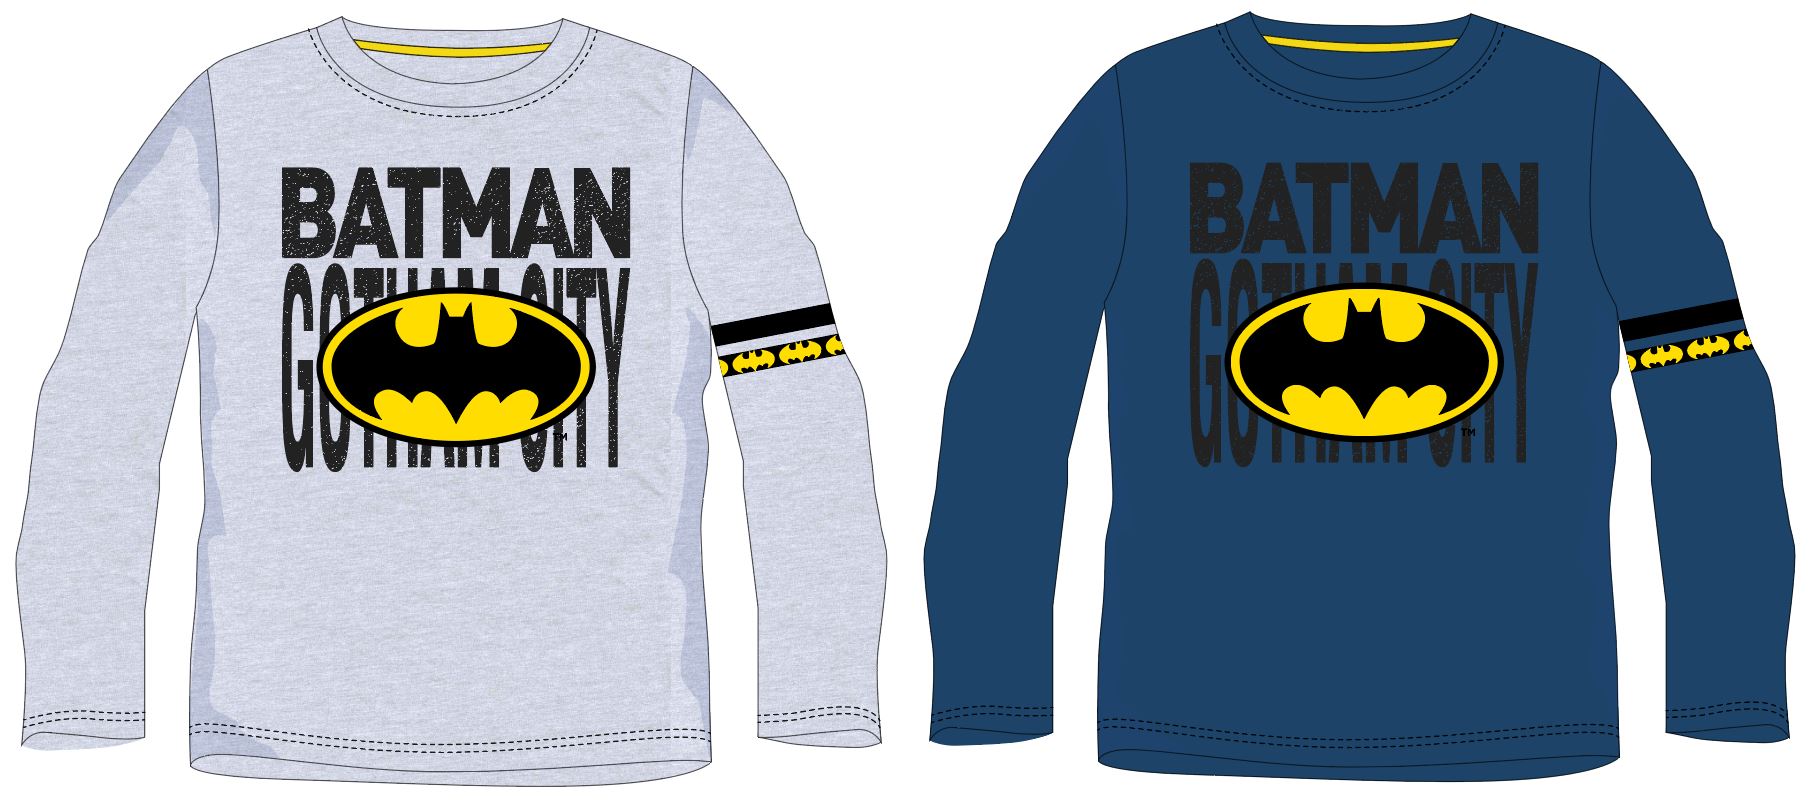 Batman - licence Chlapecké tričko - Batman 5202390, světle šedý melír Barva: Šedá, Velikost: 164